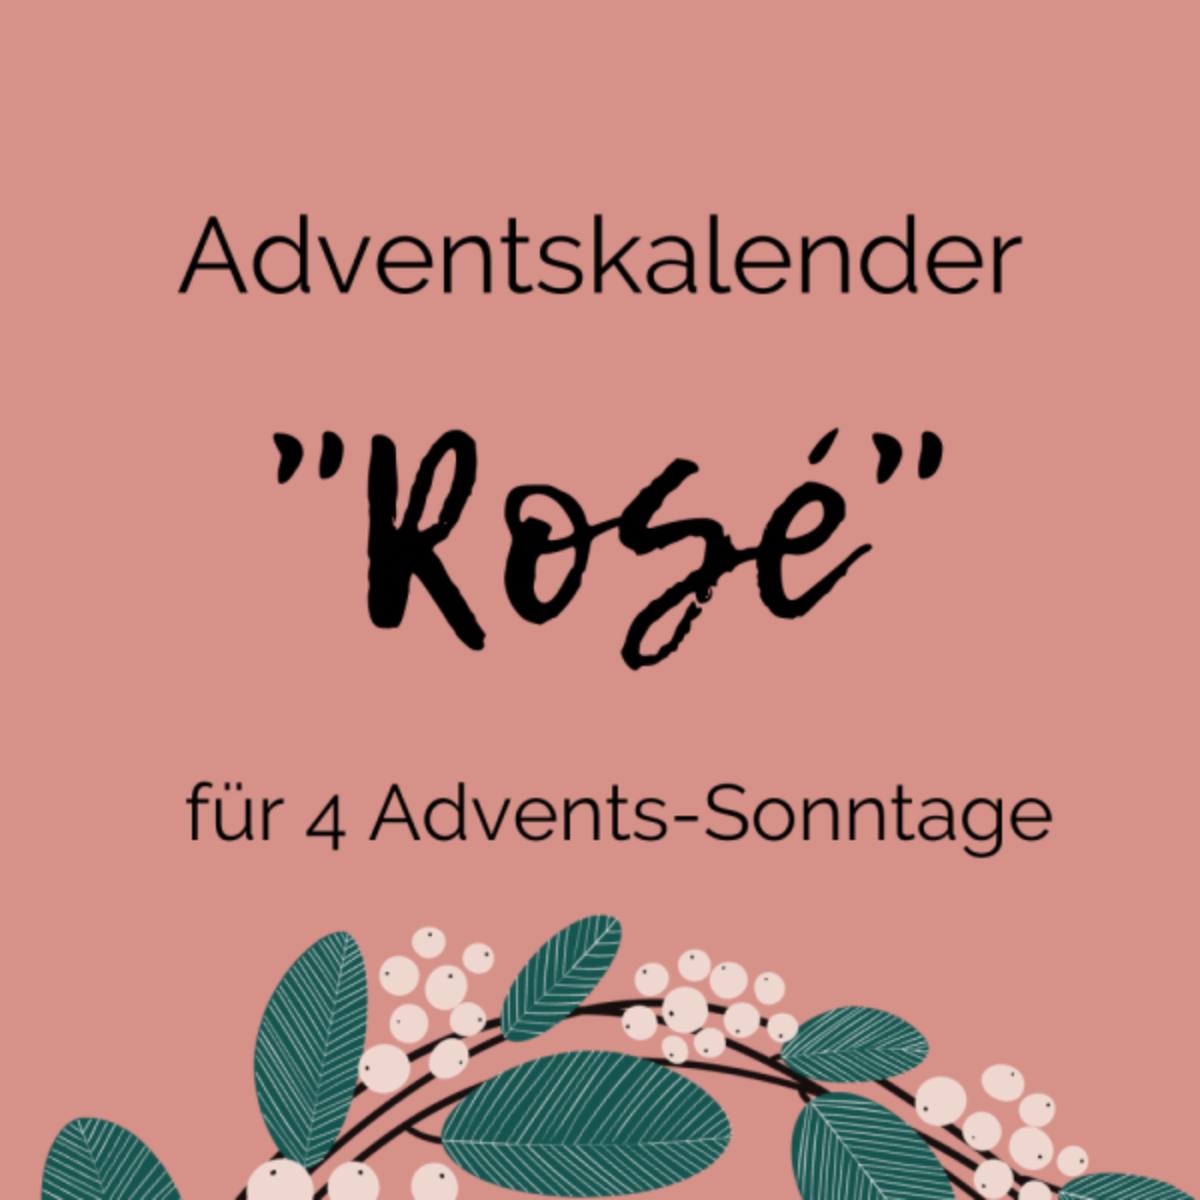 Premium-Adventskalender "Rosé" für 4 Advents-Sonntage 